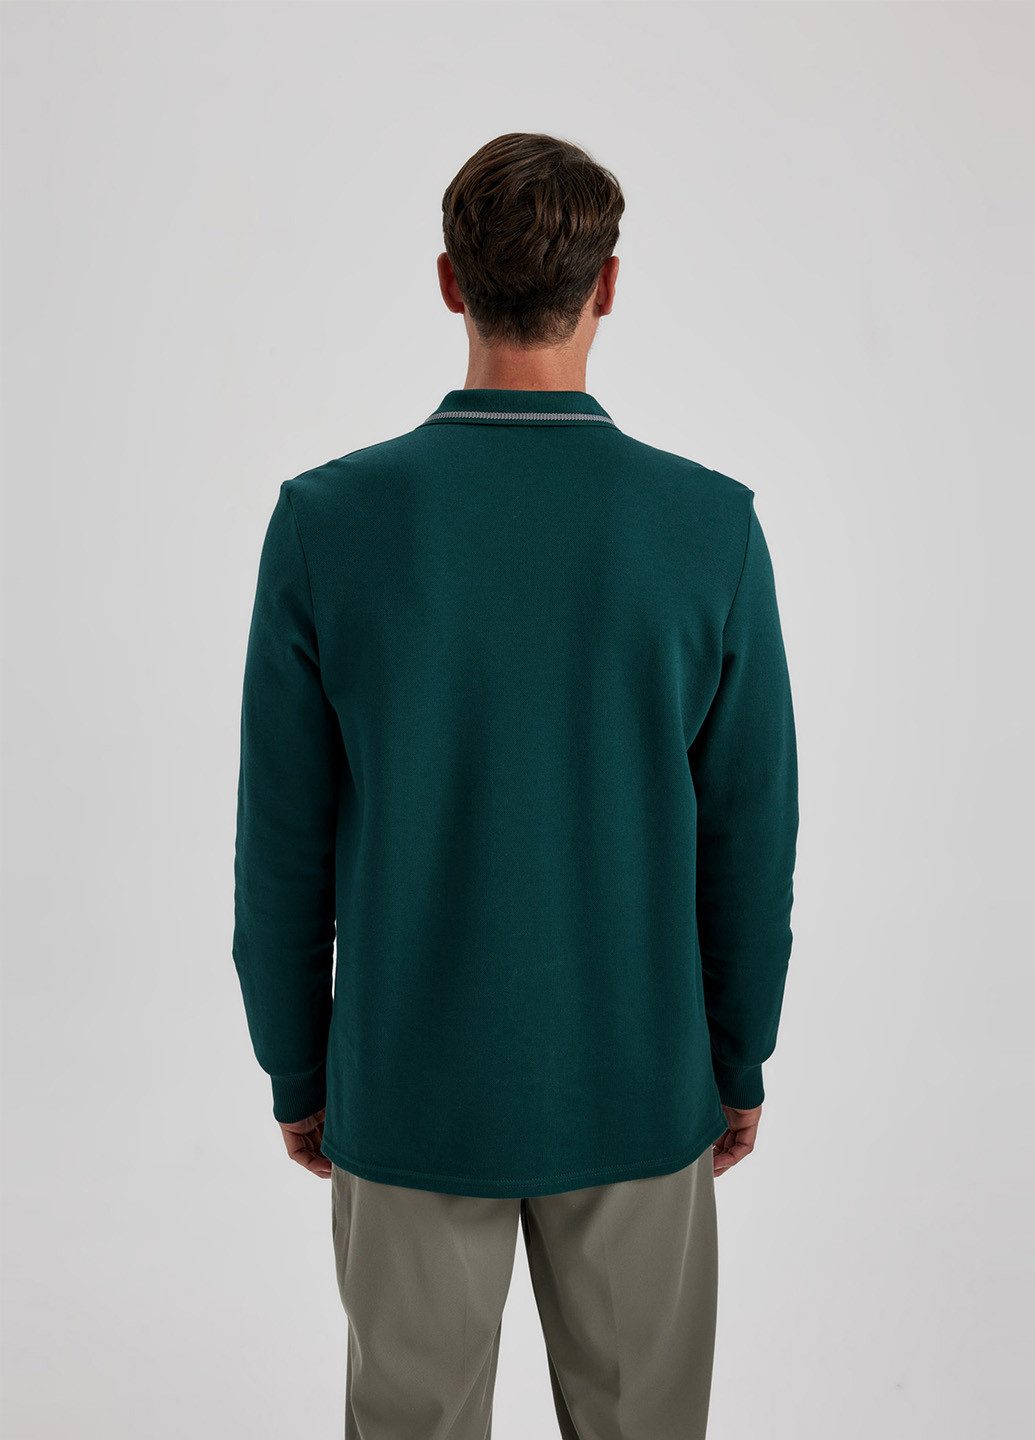 Зеленая футболка-поло для мужчин DeFacto однотонная